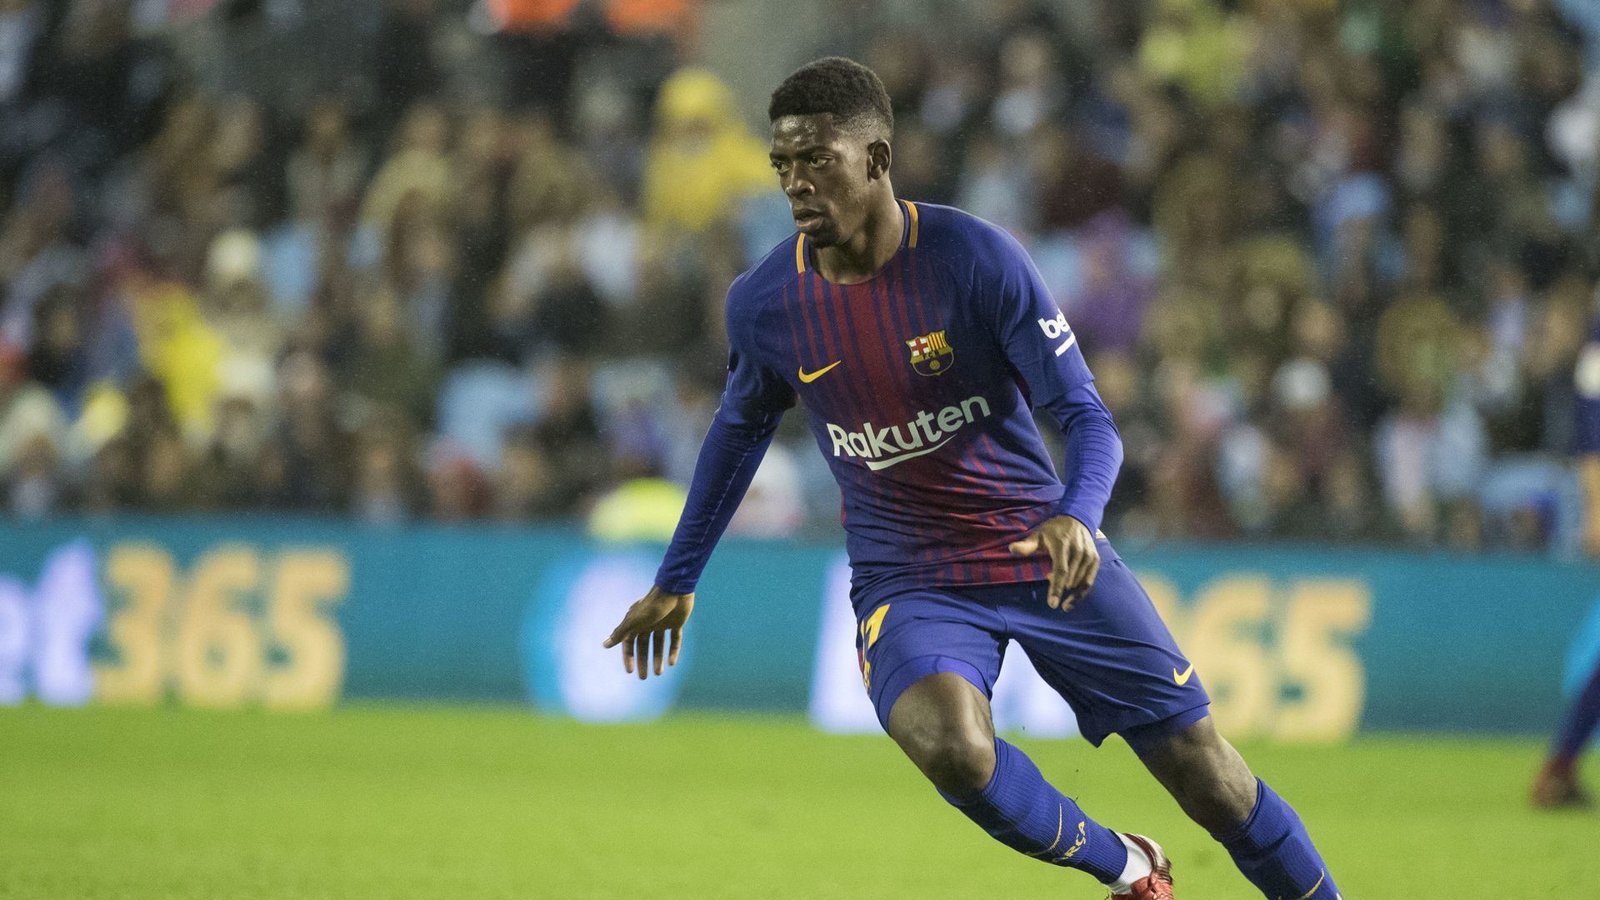 Der Franzose Ousmane Dembele wechselte 2017 von Borussia Dortmund zum FC Barcelona – für 105 Millionen Euro (plus Boni bis 42 Millionen).Foto: AP